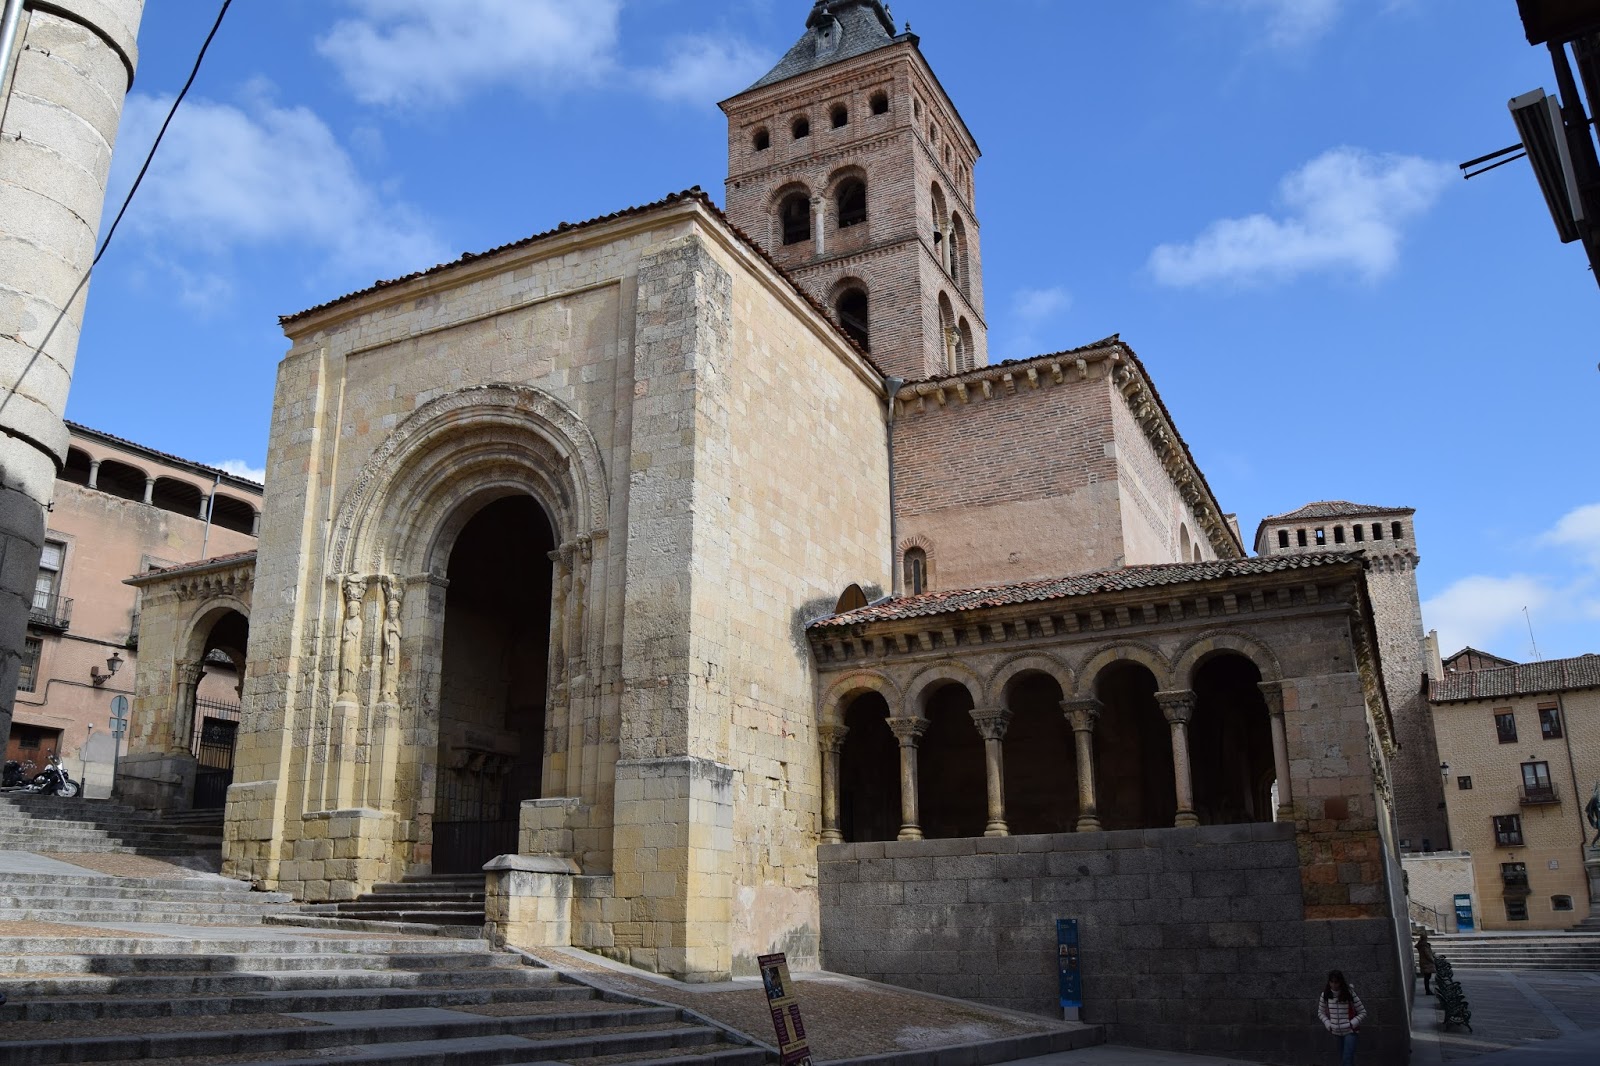 Fotos de viajes y curiosidades: Segovia - La Iglesia de San Martín